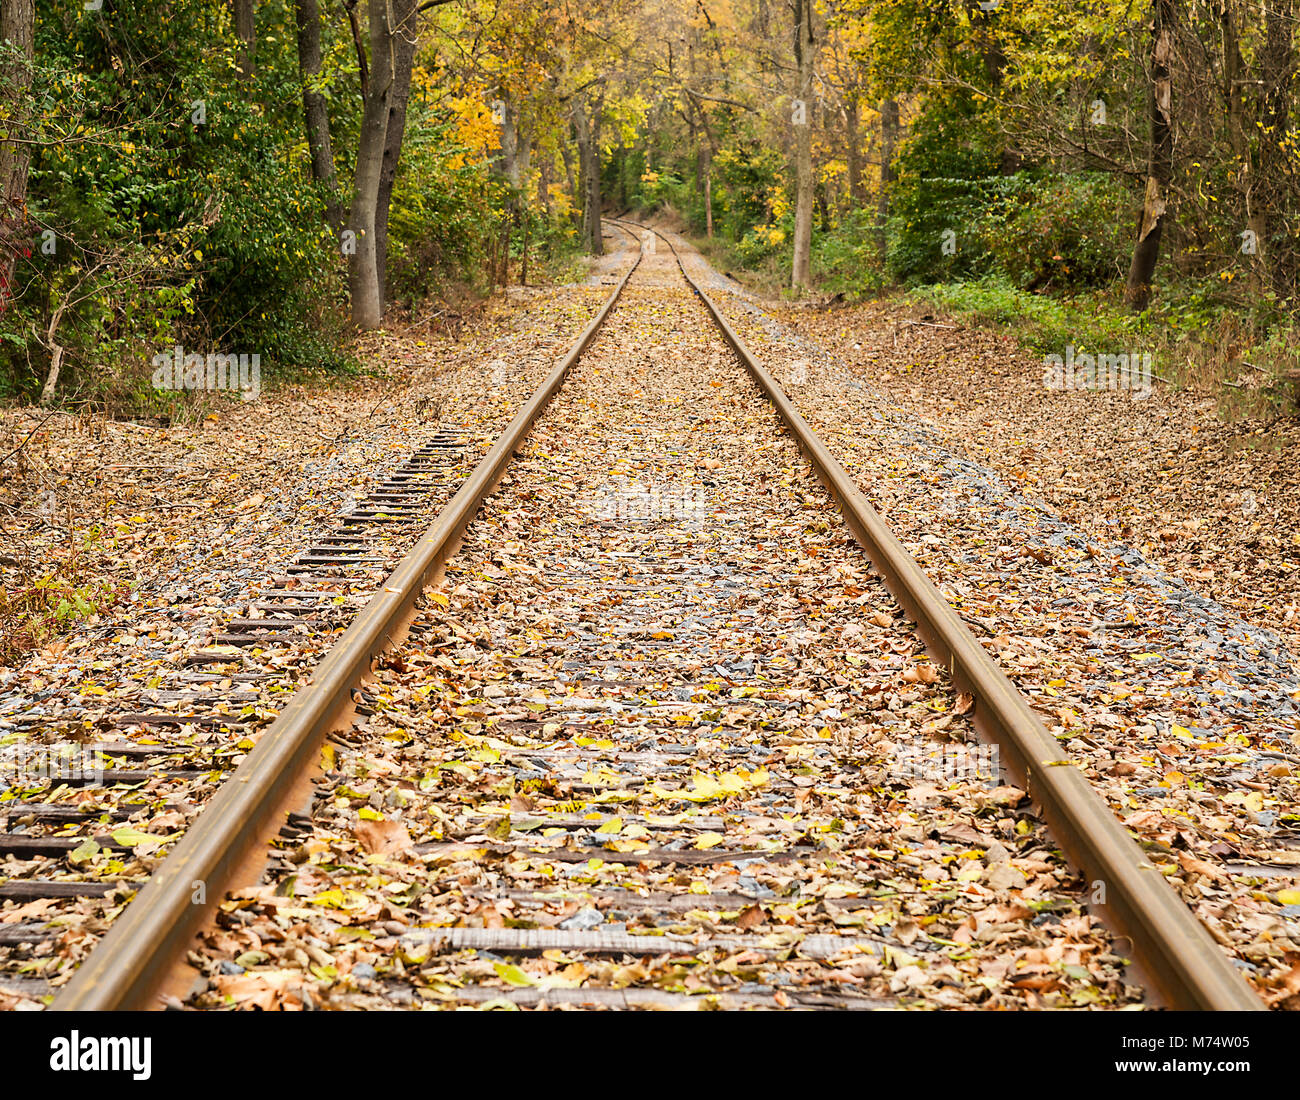 Un set di ferrovia convergono in corrispondenza di una curva dove la caduta delle foglie crea splendidi colori di arancione, giallo e verde. Foto Stock